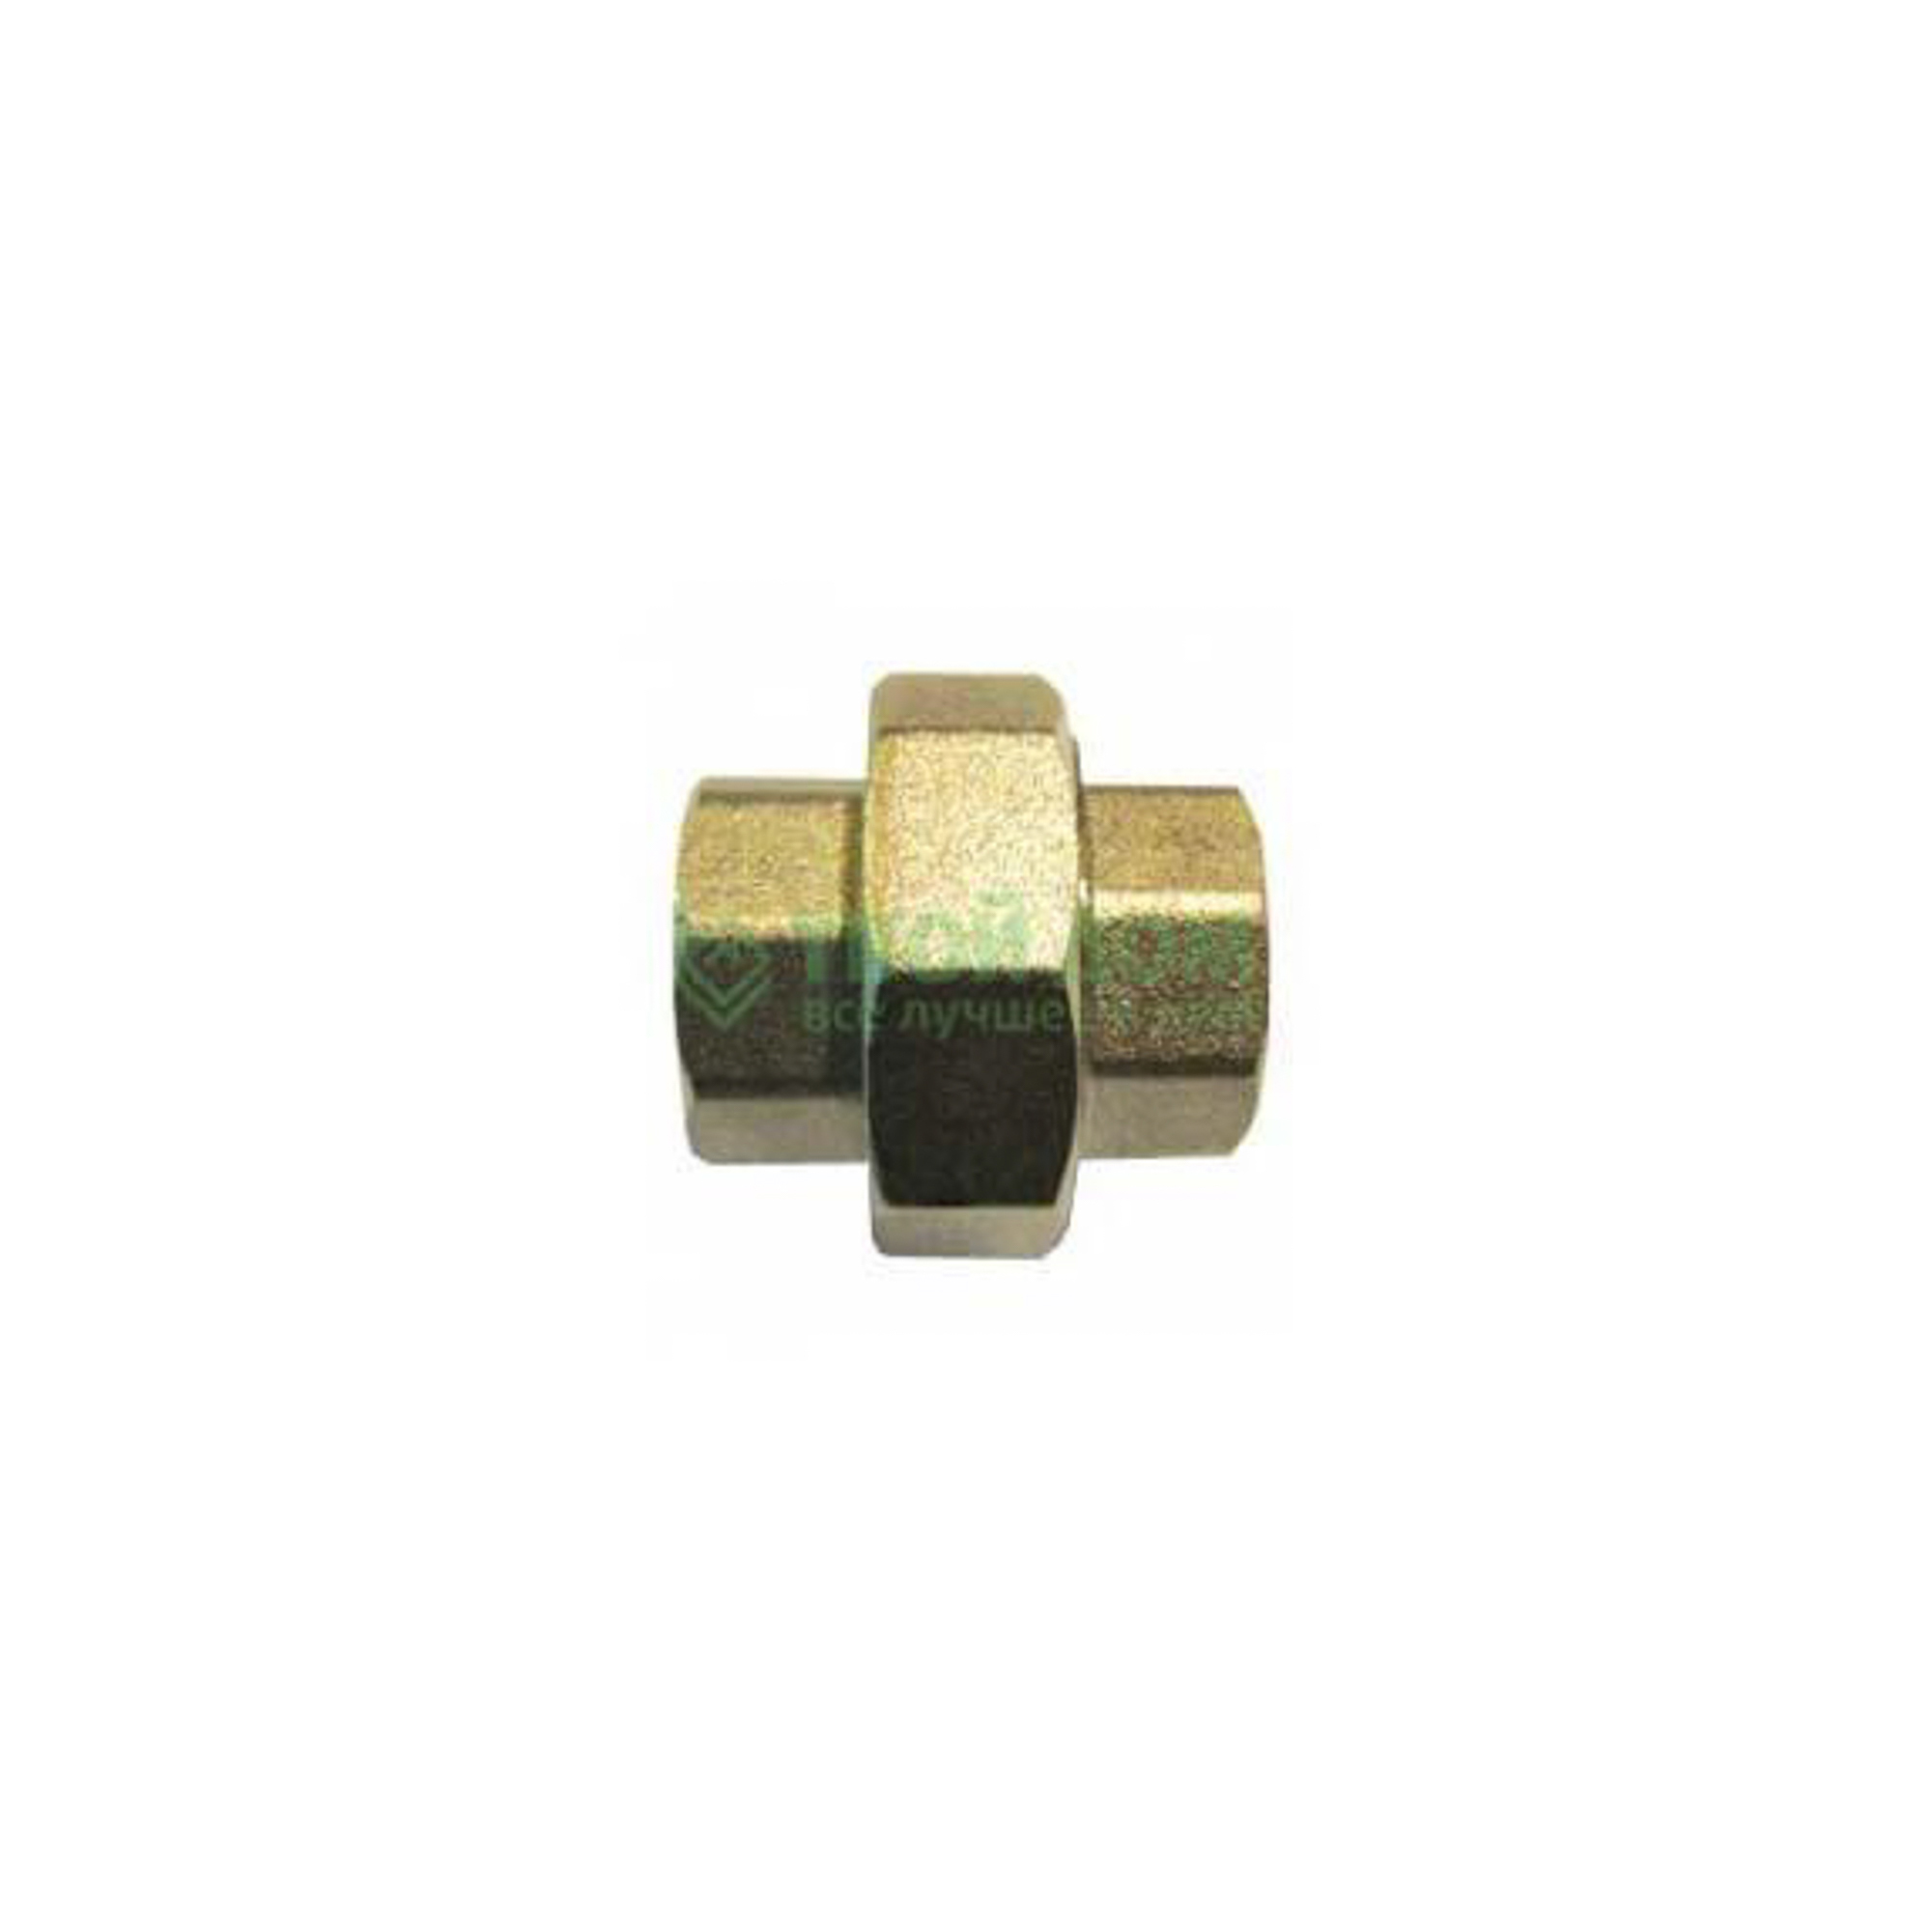 Соединитель Stc латунь ду25 м/м америк5679 (027-5381), цвет бронзовый